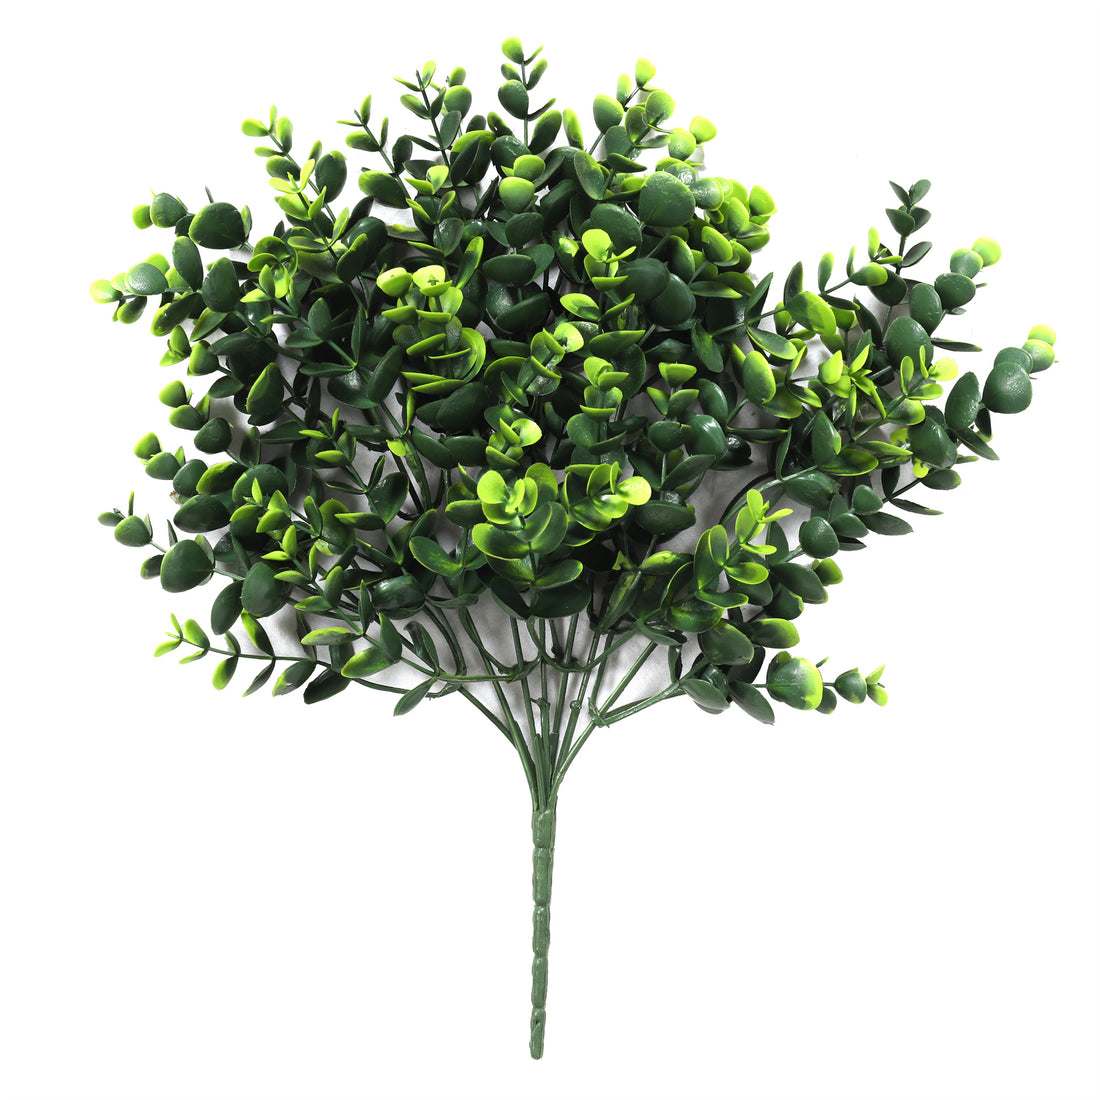 Hierba artifiical hoja redondeada verde, rama decorativa de  33 cm con protección UV